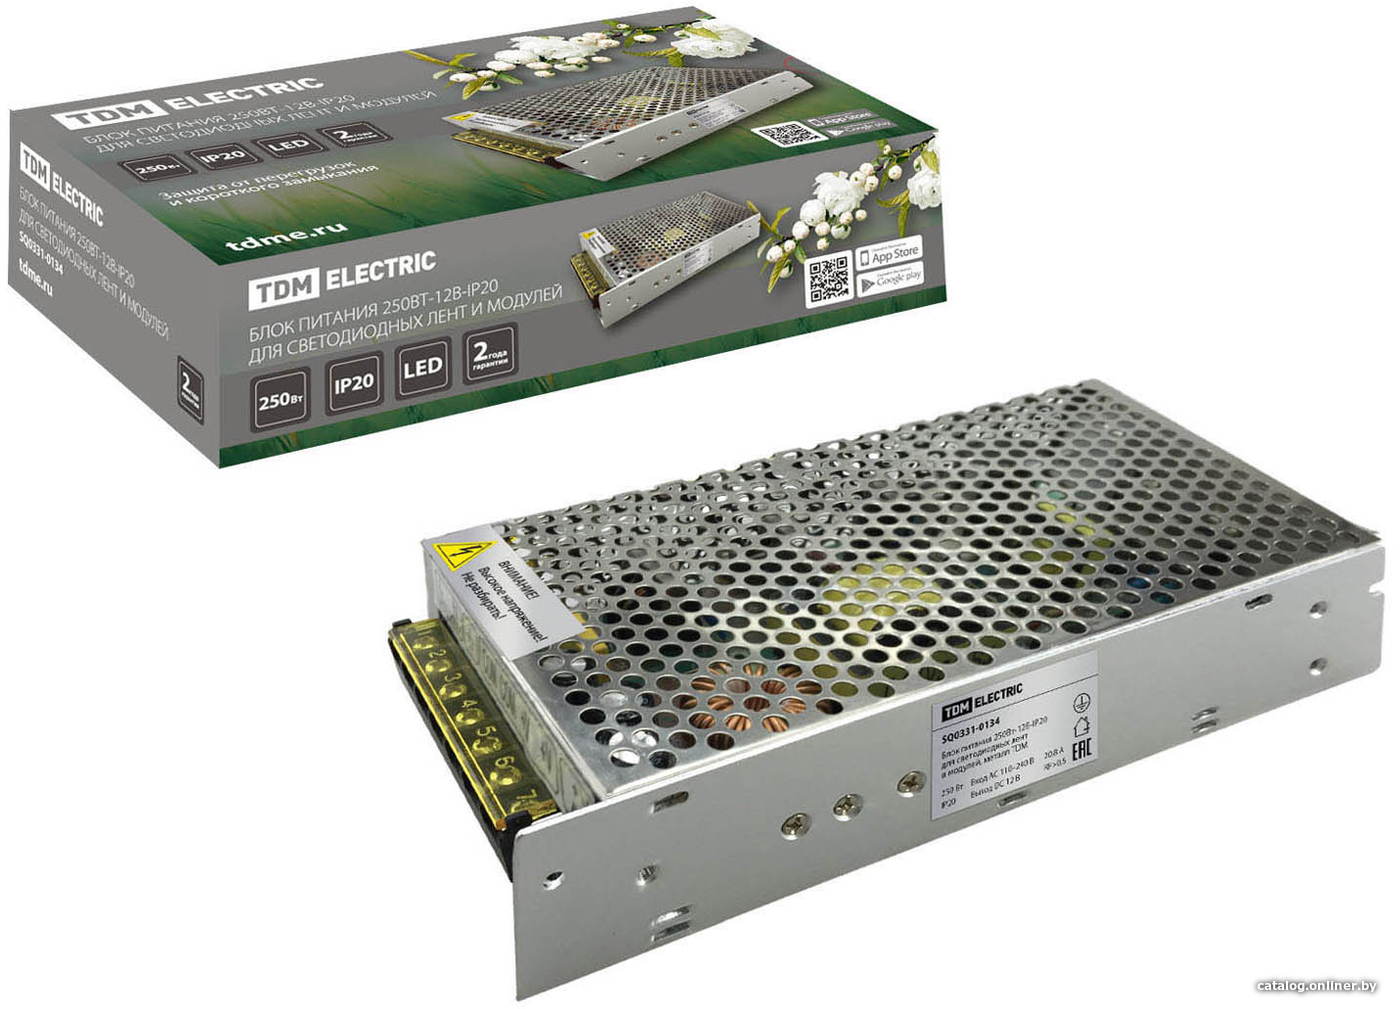 

Блок питания TDM Electric 250Вт-12В-IP20 для светодиодных лент и модулей SQ0331-0134